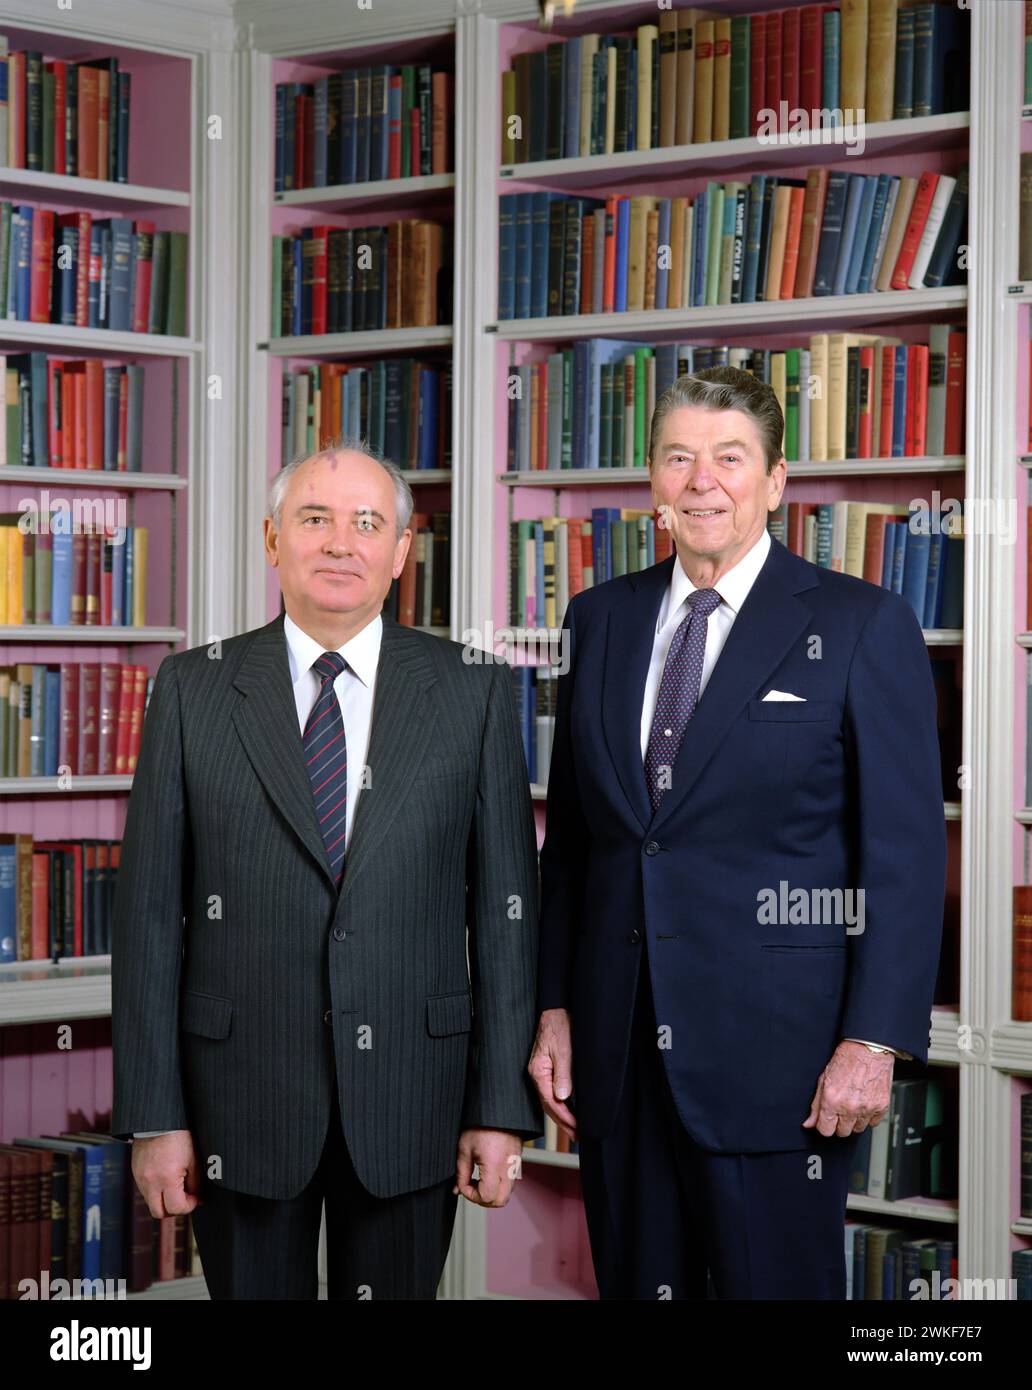 Michail Gorbatschow und Ronald Reagan. Porträt des ehemaligen Präsidenten der Sowjetunion, Michail Sergejewitsch Gorbatschow (1931–2022) und US-Präsident Ronald Reagan (1911–2004) in der Bibliothek des Weißen Hauses, 1987 Stockfoto